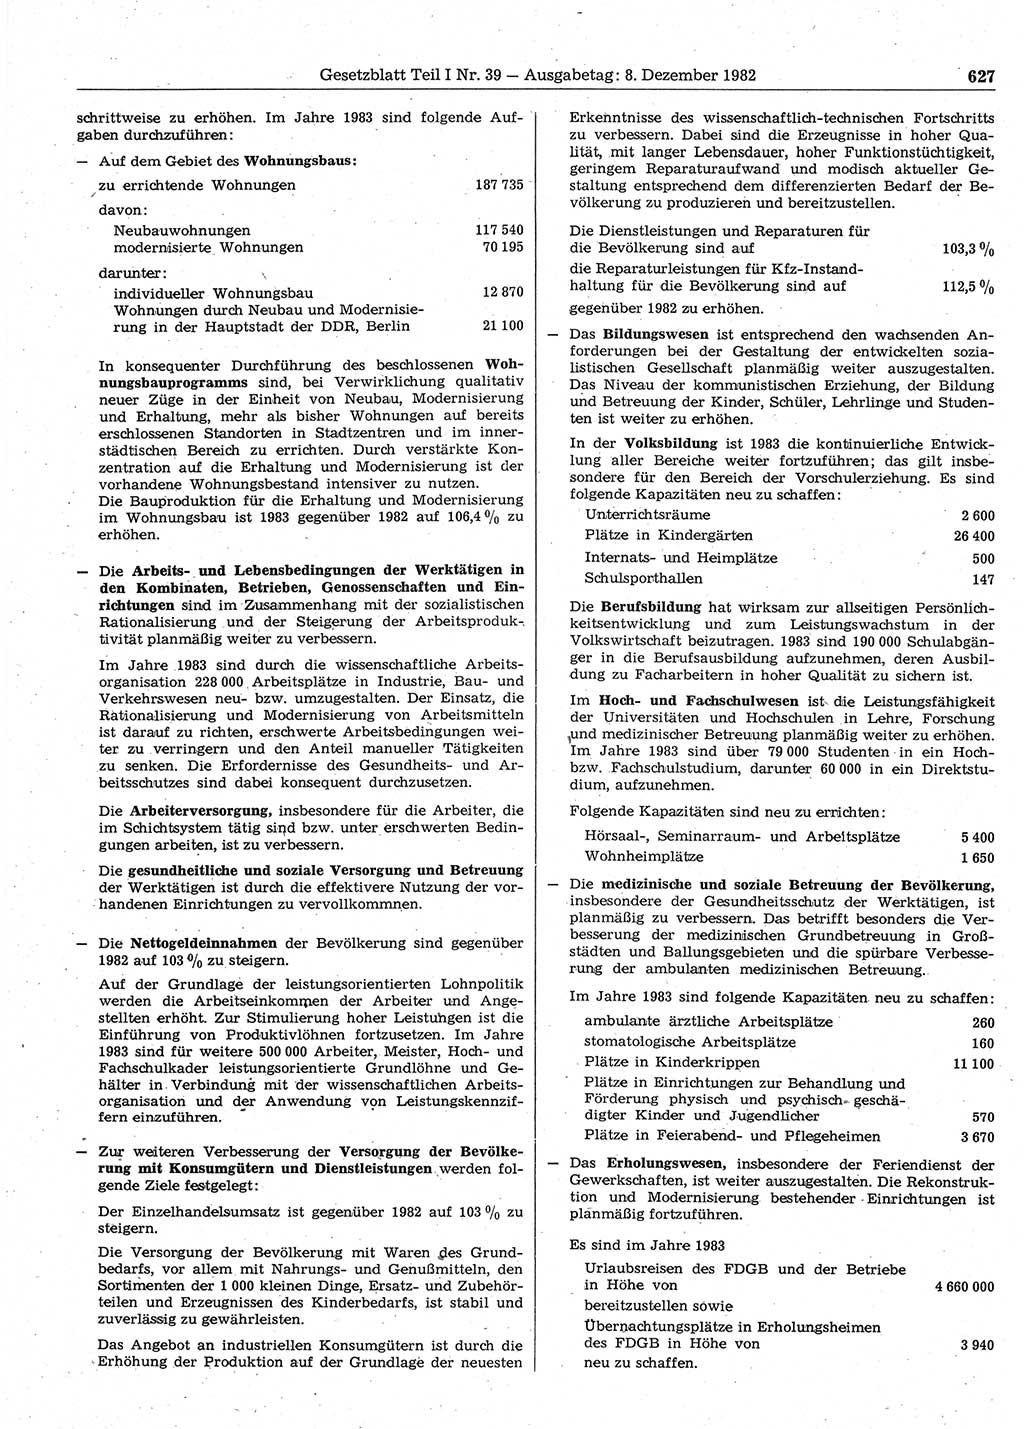 Gesetzblatt (GBl.) der Deutschen Demokratischen Republik (DDR) Teil Ⅰ 1982, Seite 627 (GBl. DDR Ⅰ 1982, S. 627)